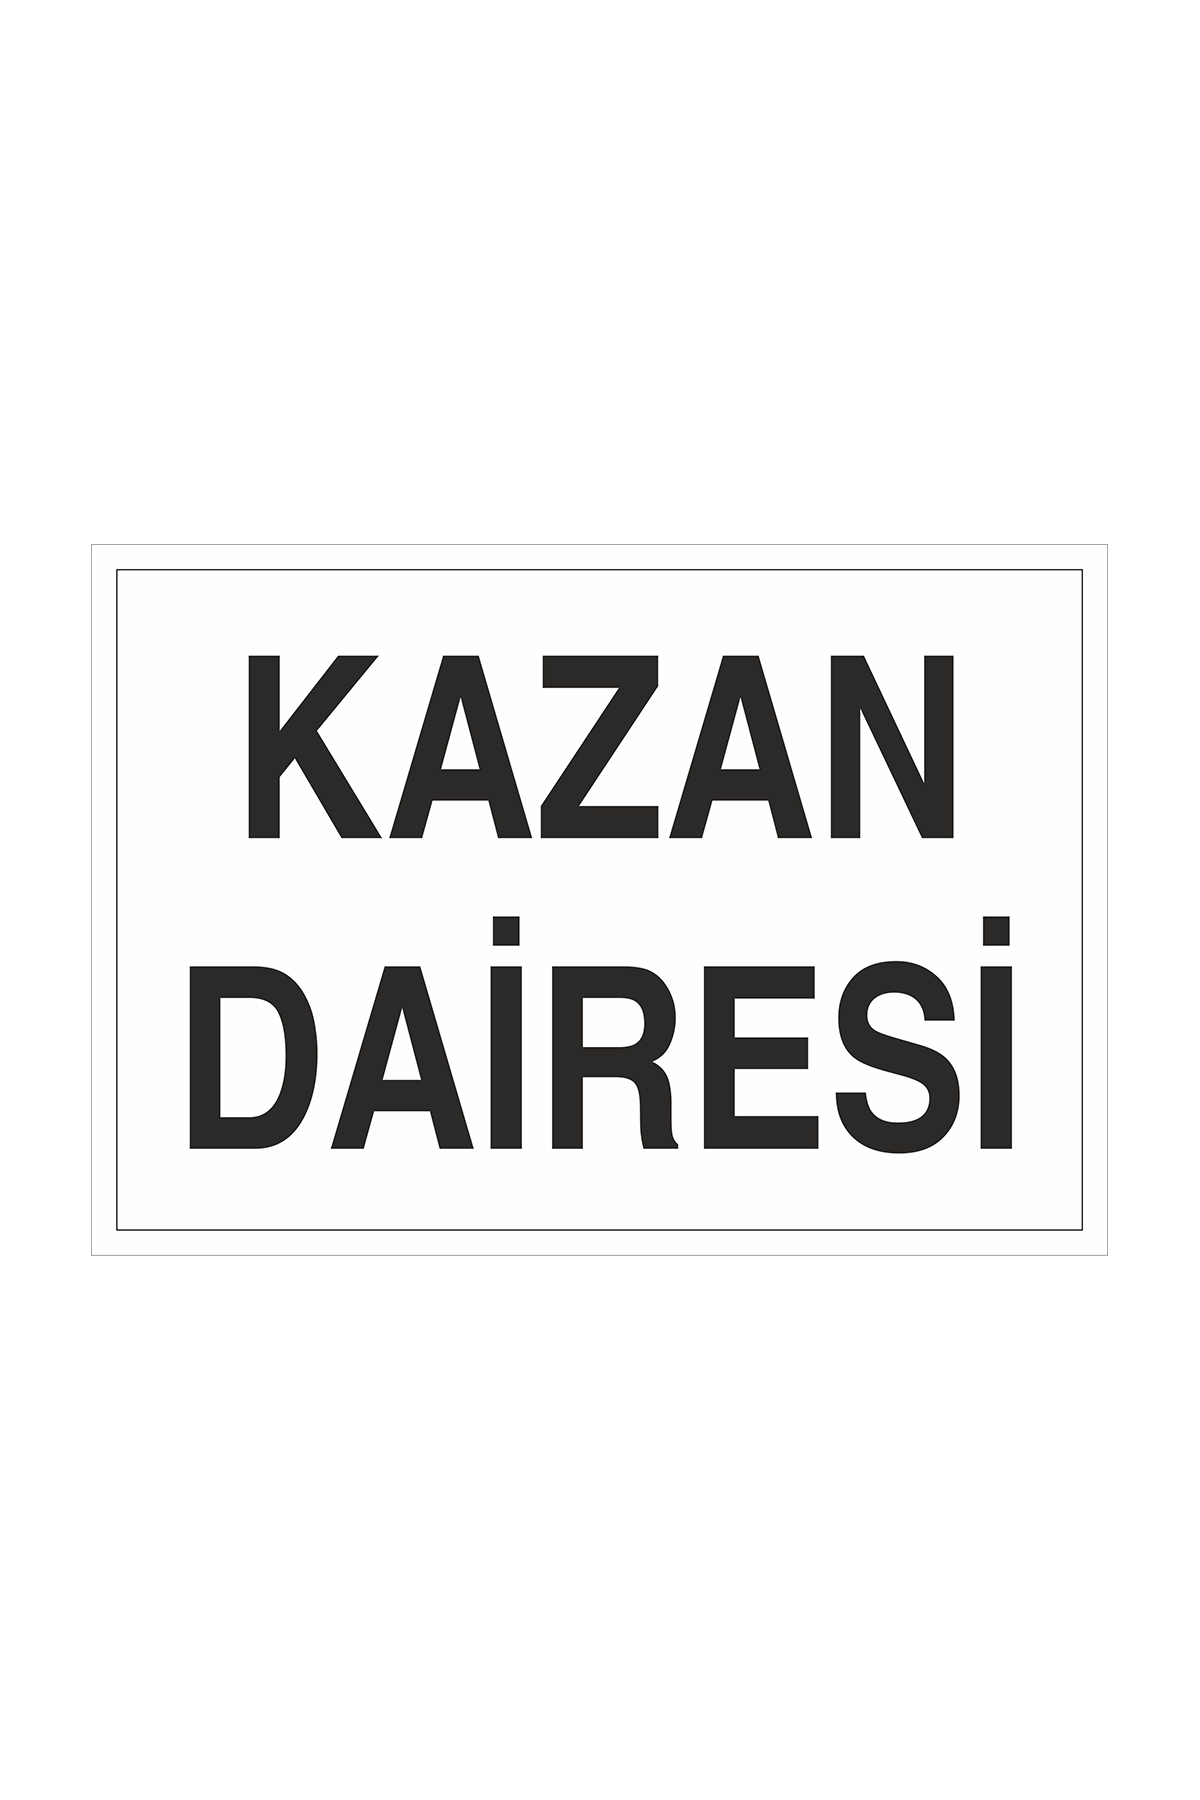 İş Güvenliği Levhası Sticker - Kazan Dairesi